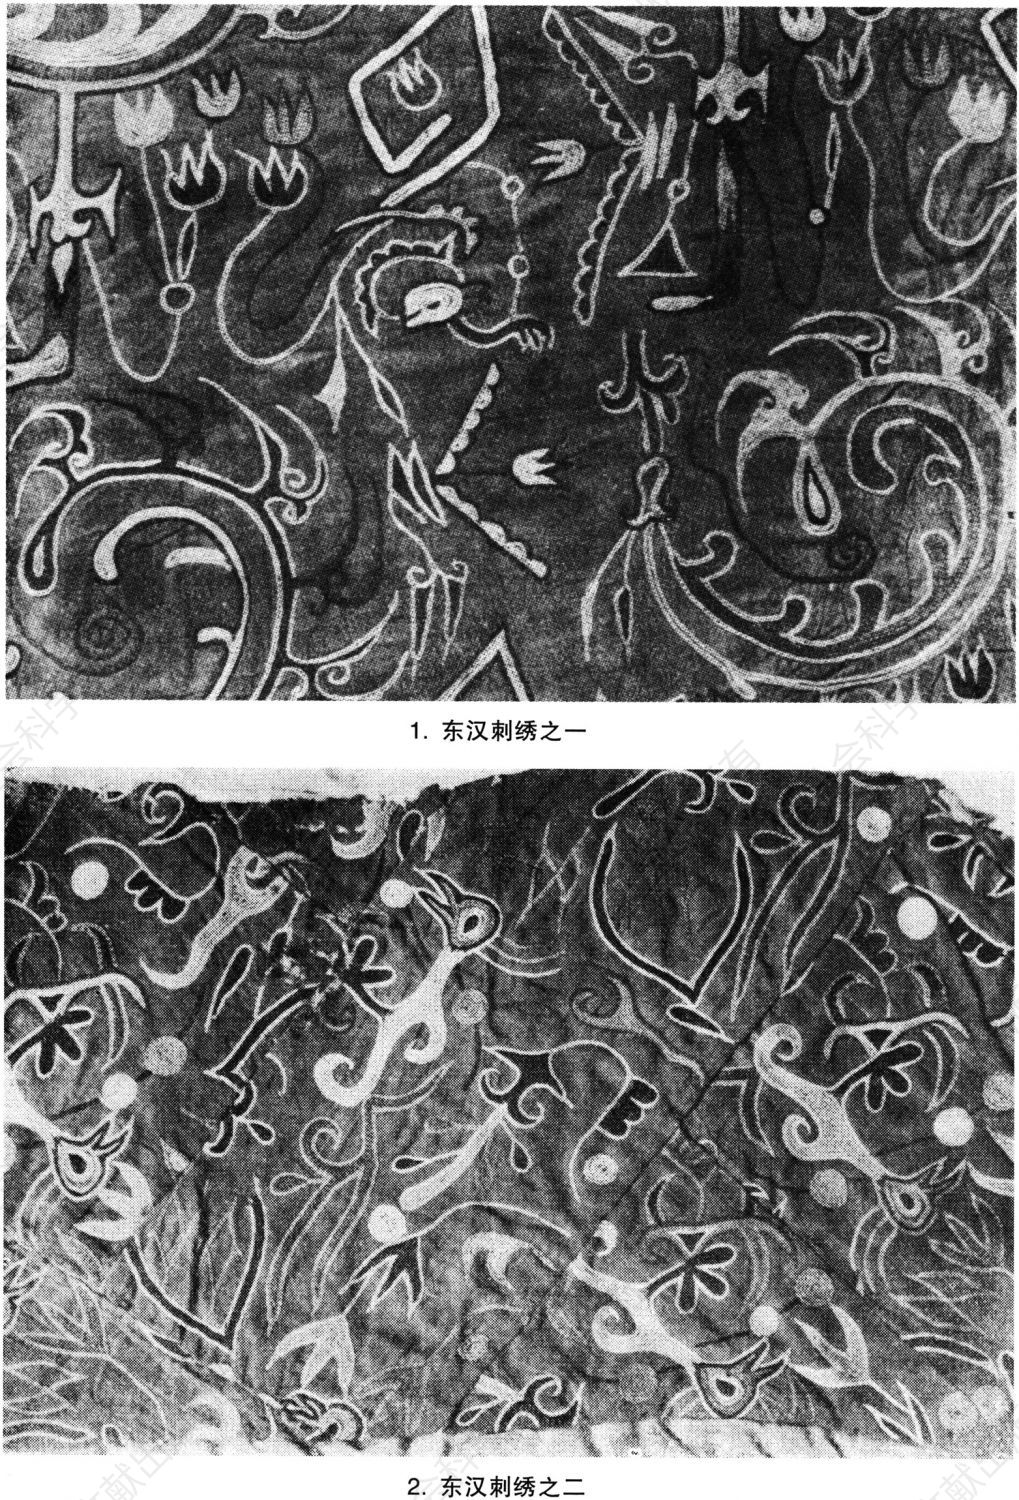 图版4-4 尼雅出土的东汉刺绣